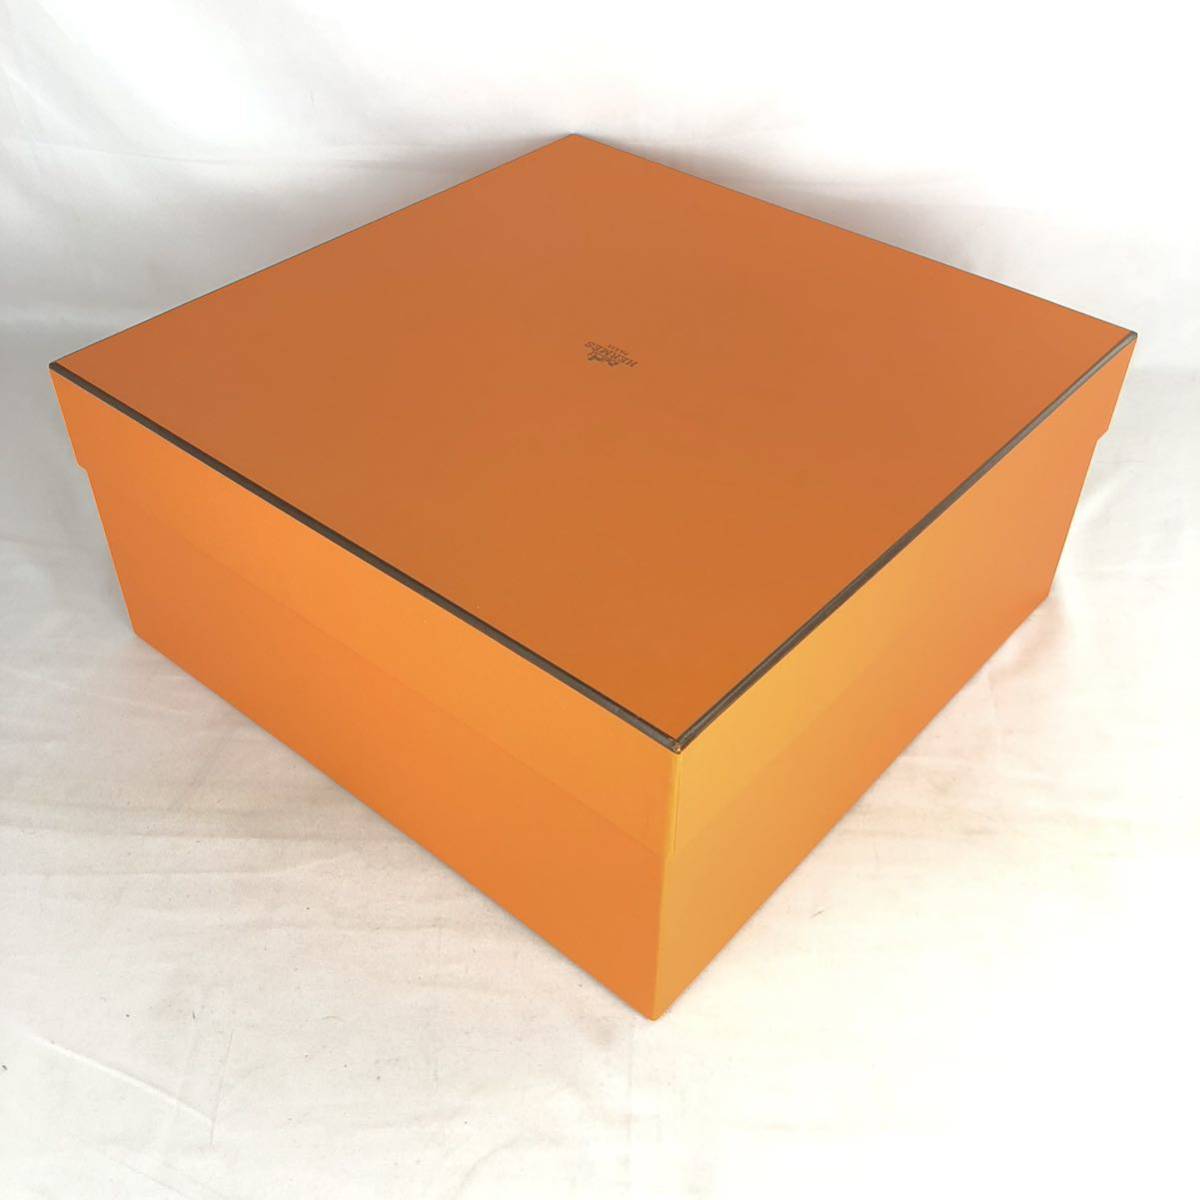 HERMES エルメス 空箱 BOX 空き箱 1312 オレンジ バッグ バーキンガーデンパーティ ケリー 等 大型 ボックス 鞄_画像4